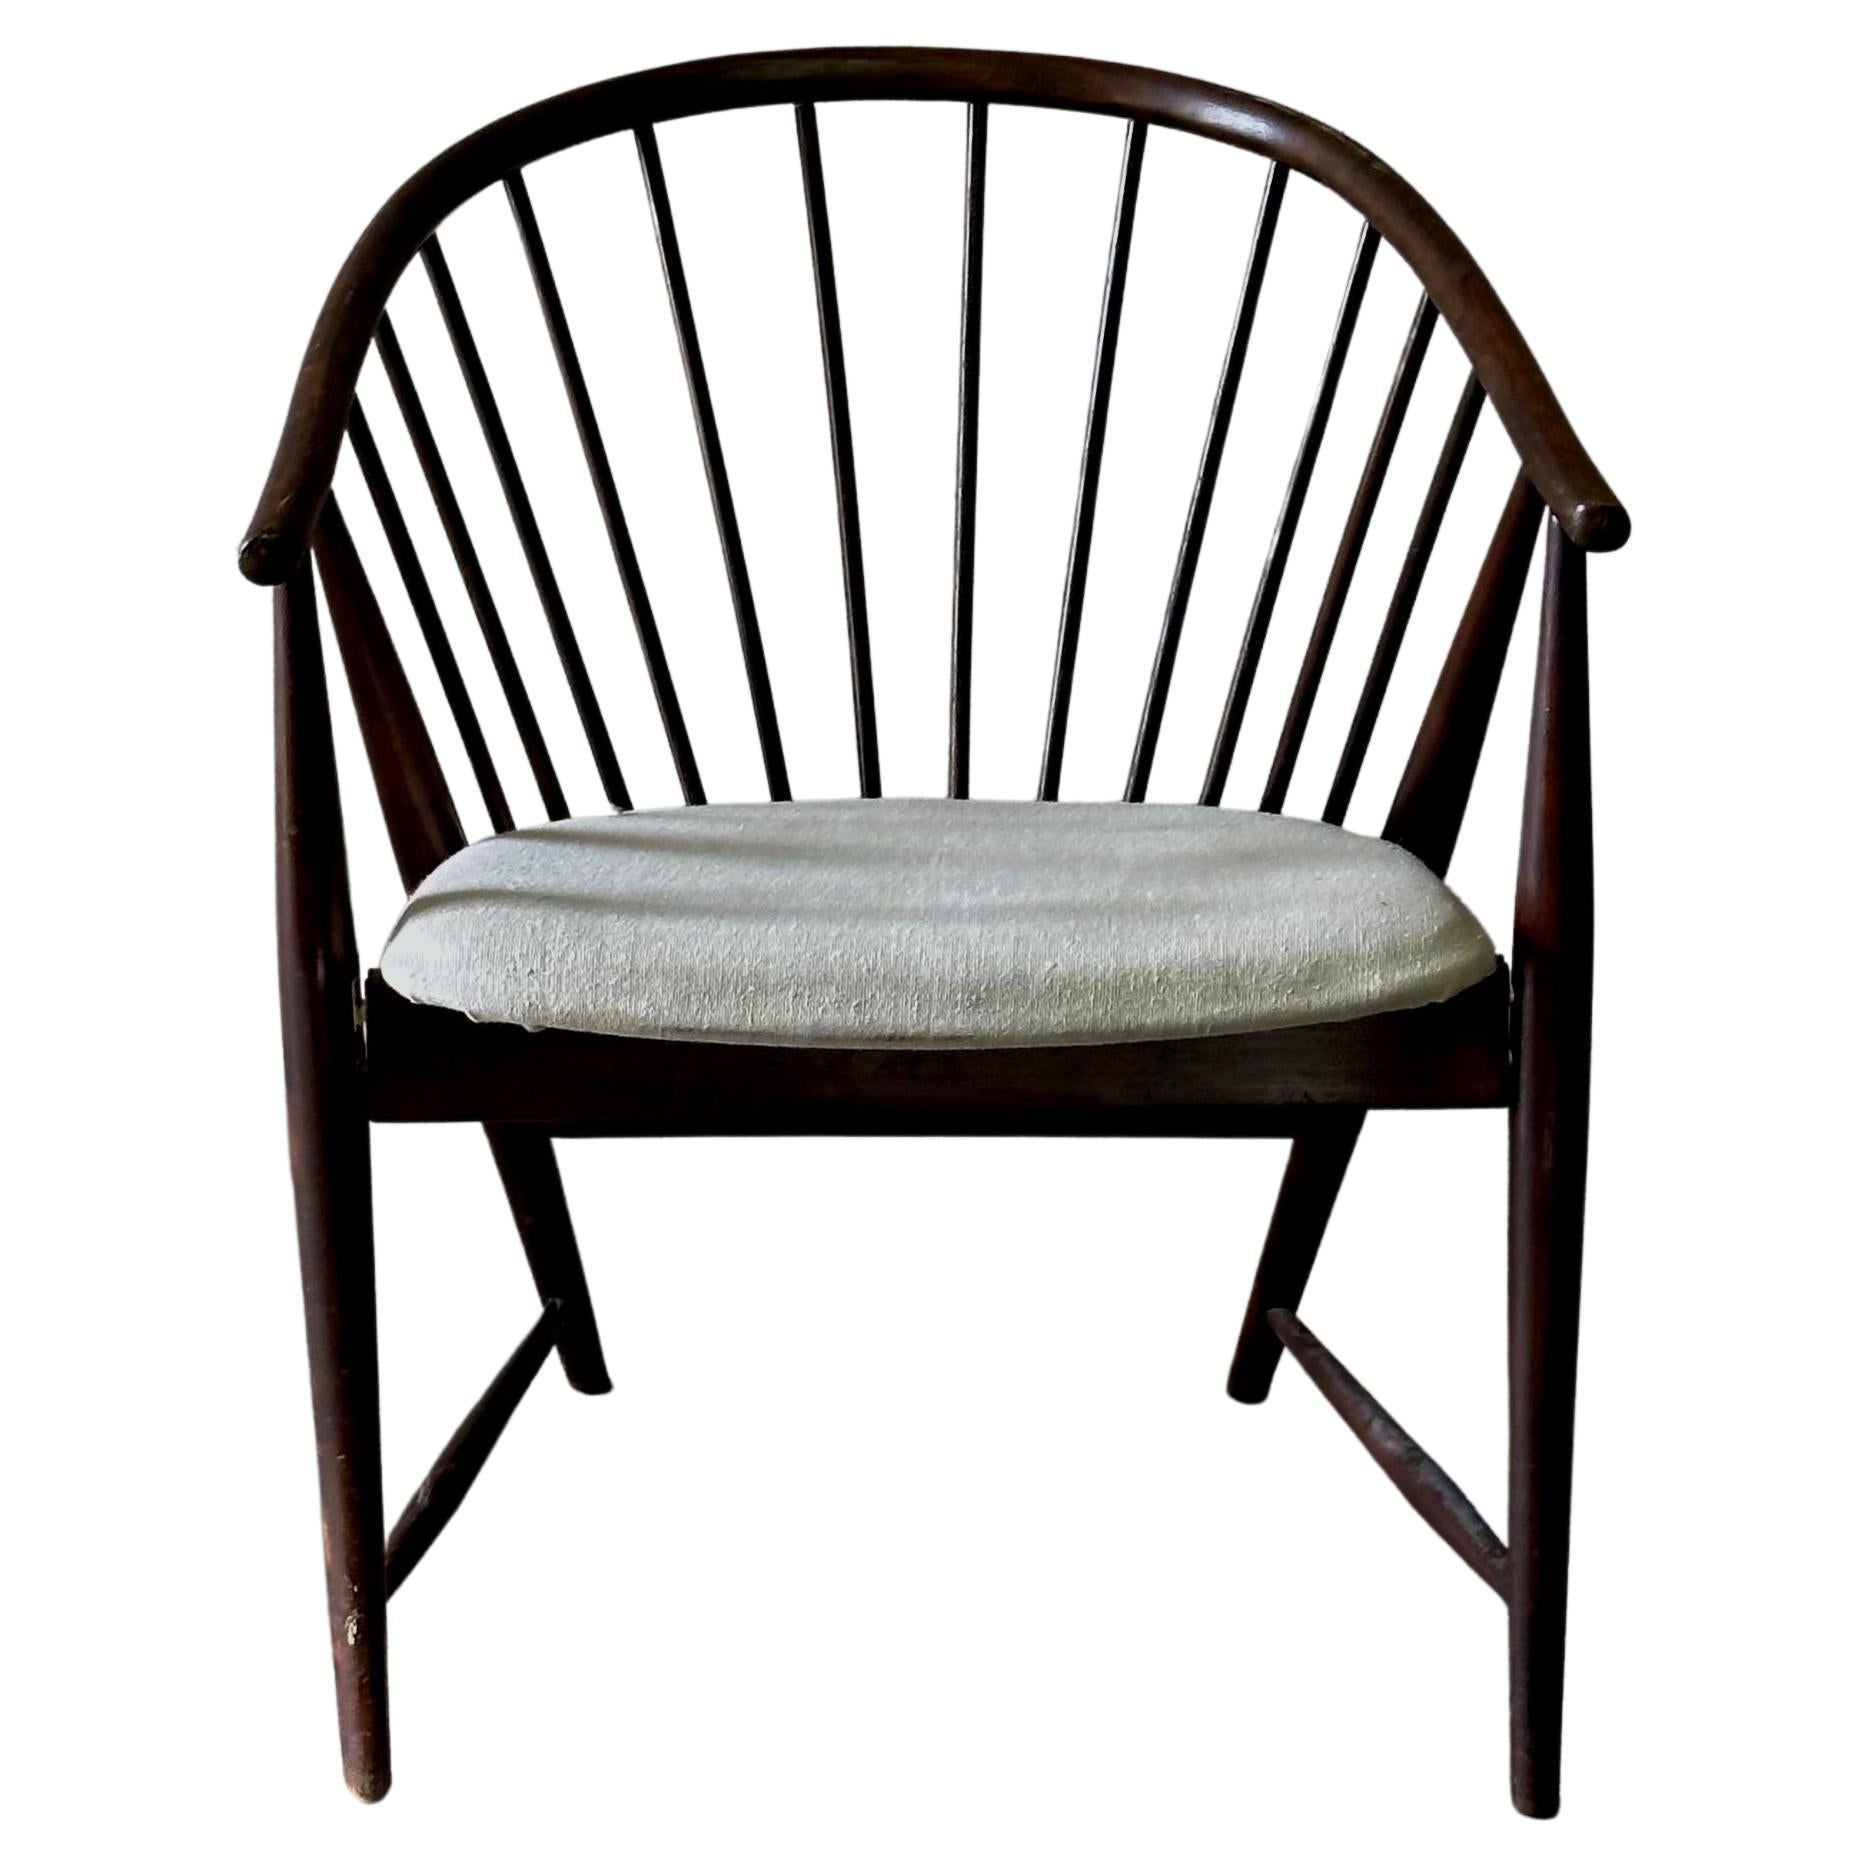 Norwegian Midcentury Wooden Chair